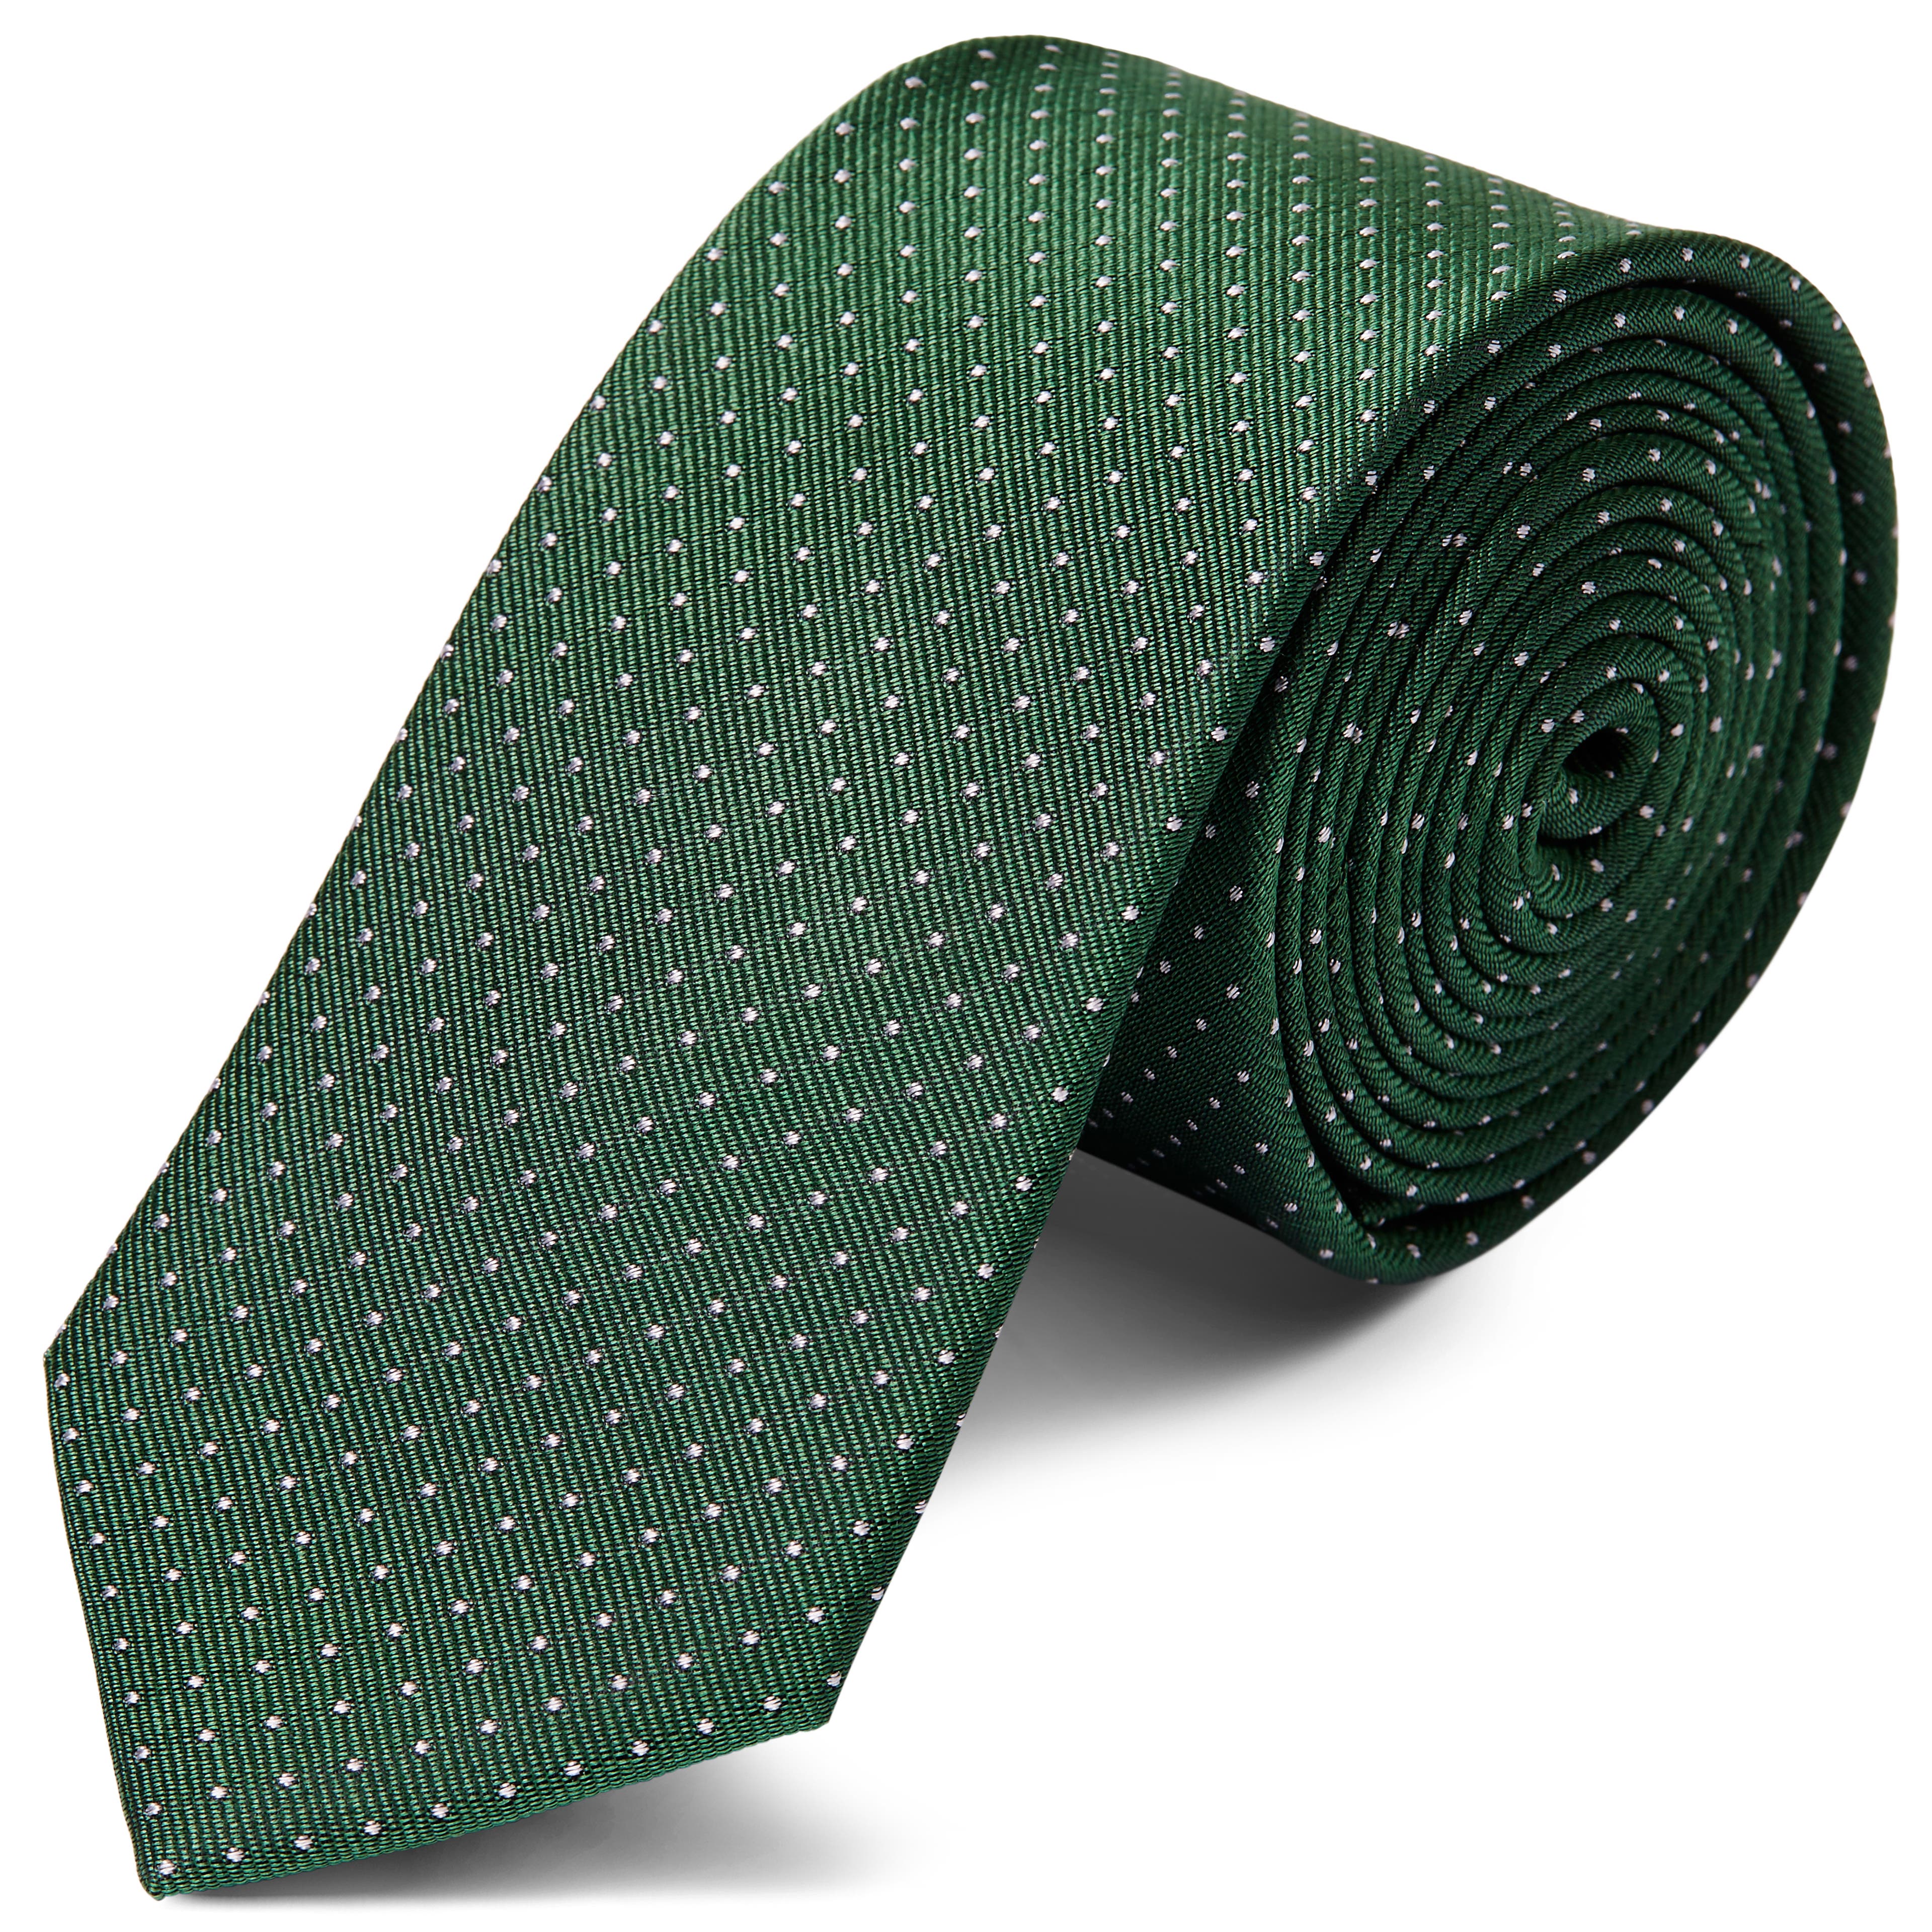 Zöld selyem nyakkendő fehér pöttyös mintával - 6 cm